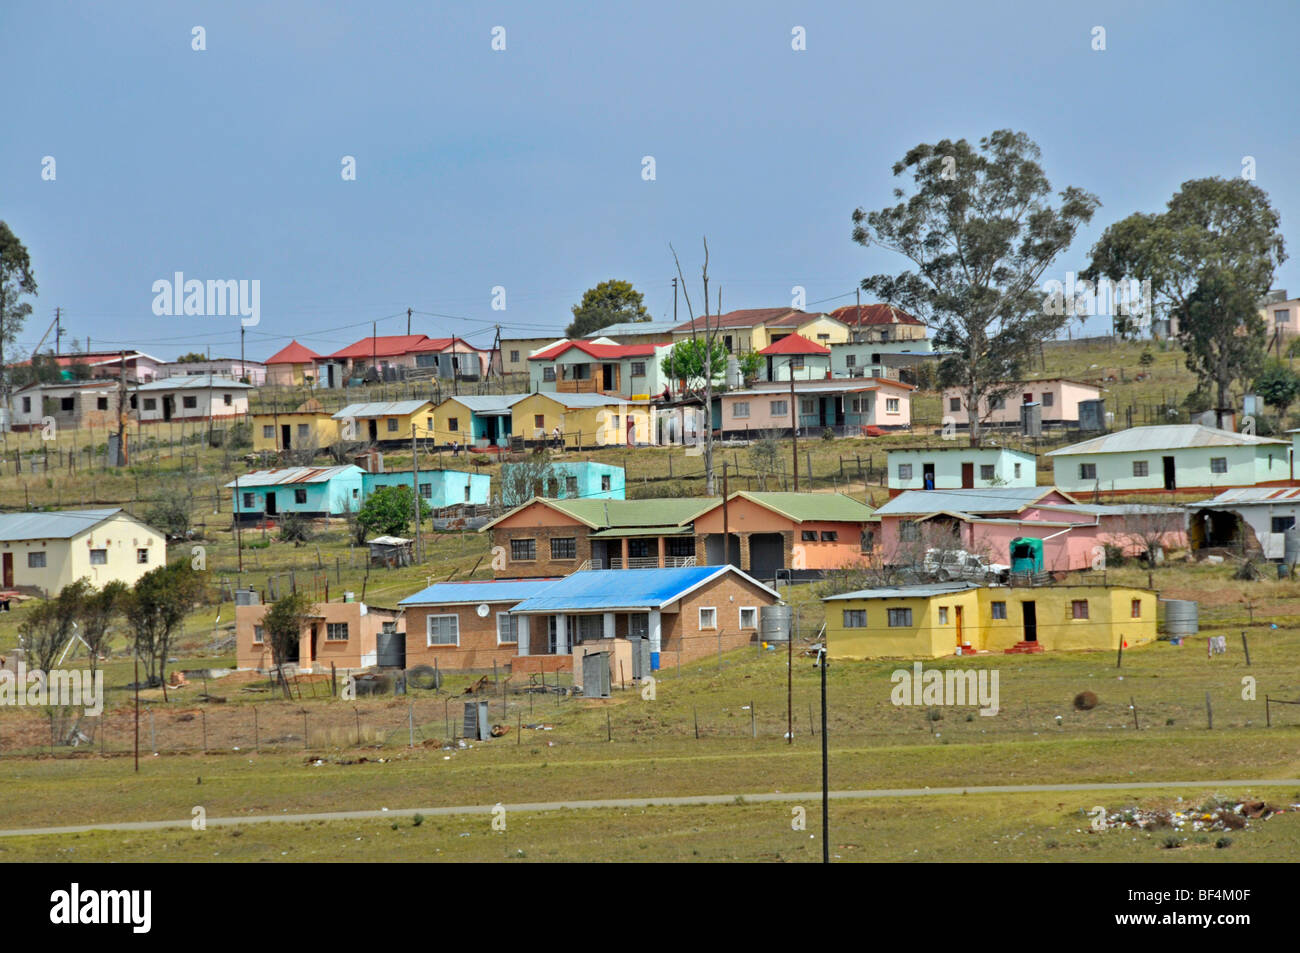 Maisons dans la région du Transkei, Province orientale du Cap, Afrique du Sud, l'Afrique Banque D'Images